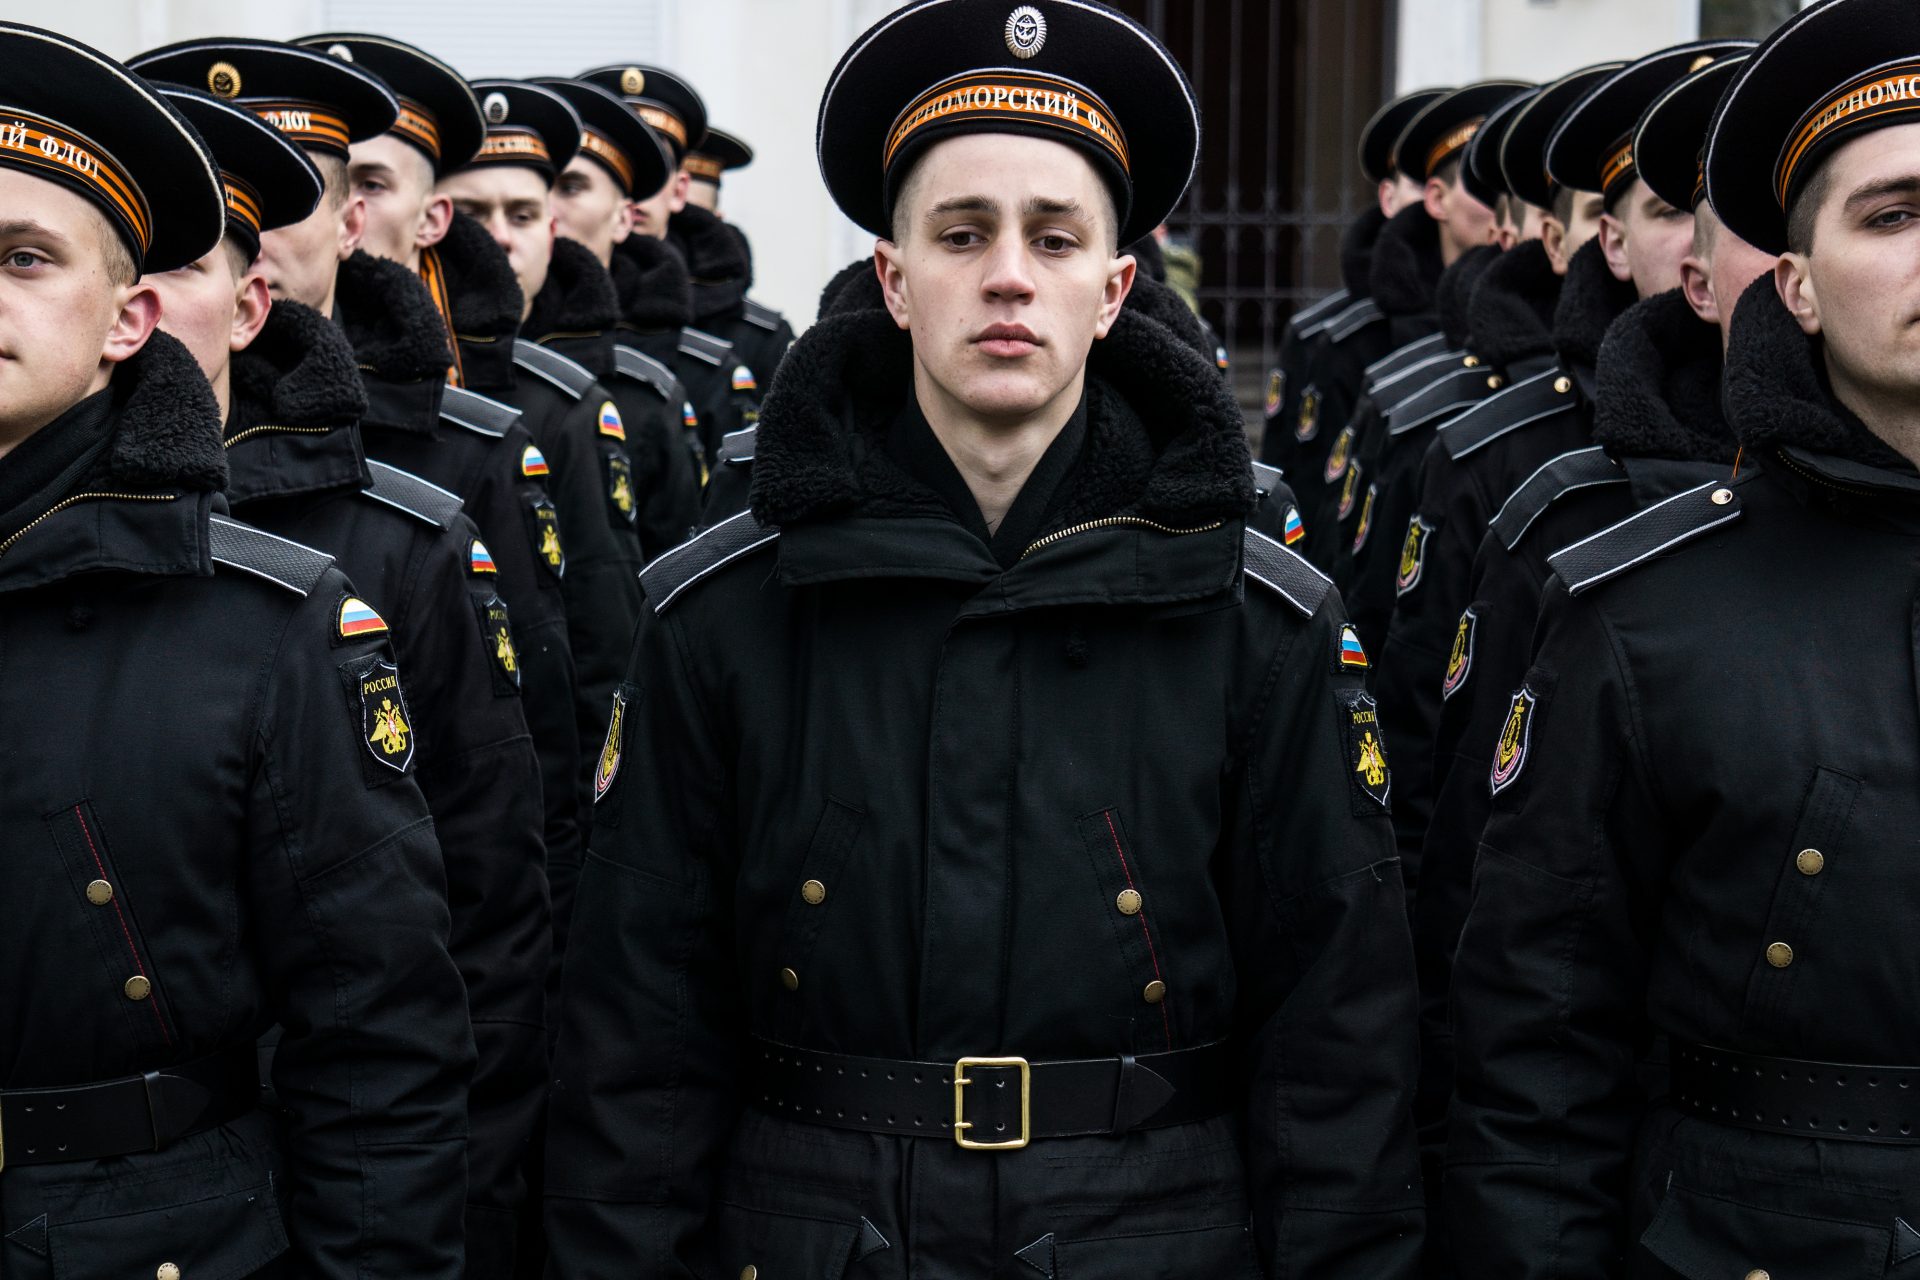 Un contrato de por vida para muchos soldados rusos